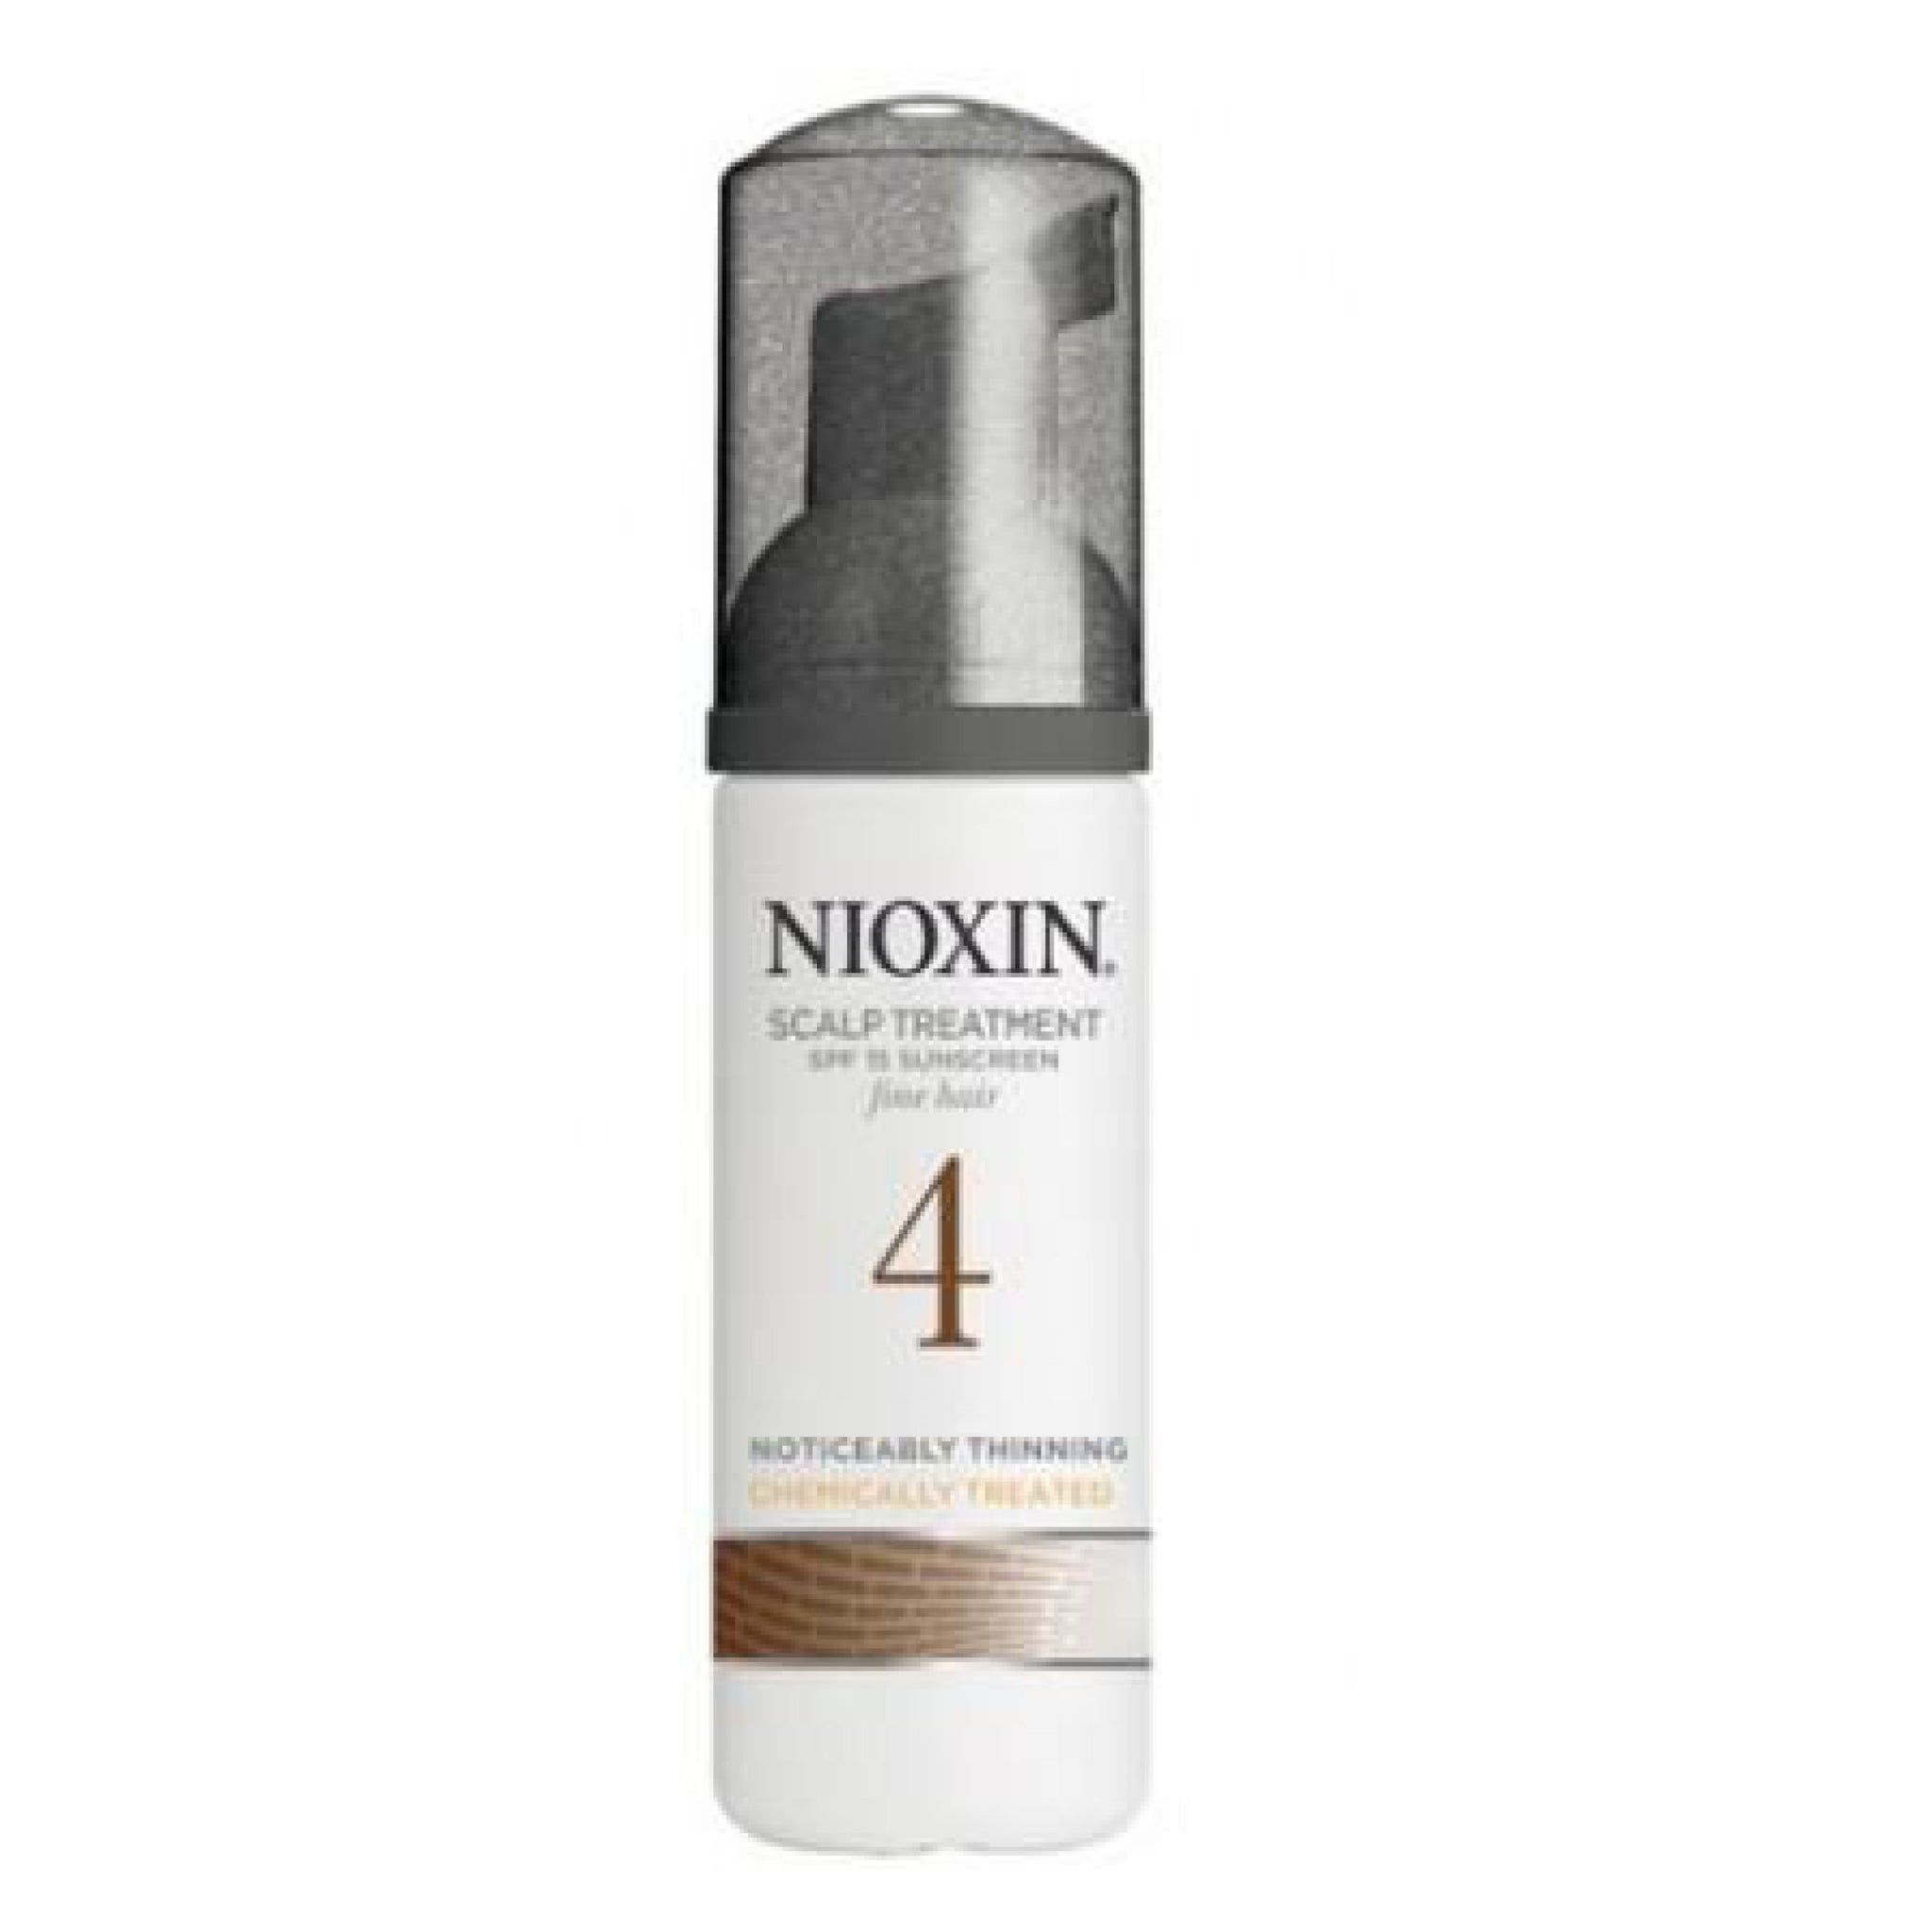 Nioxin Scalp Treatment System 4 100ml - Fine Chemically Treated Hair